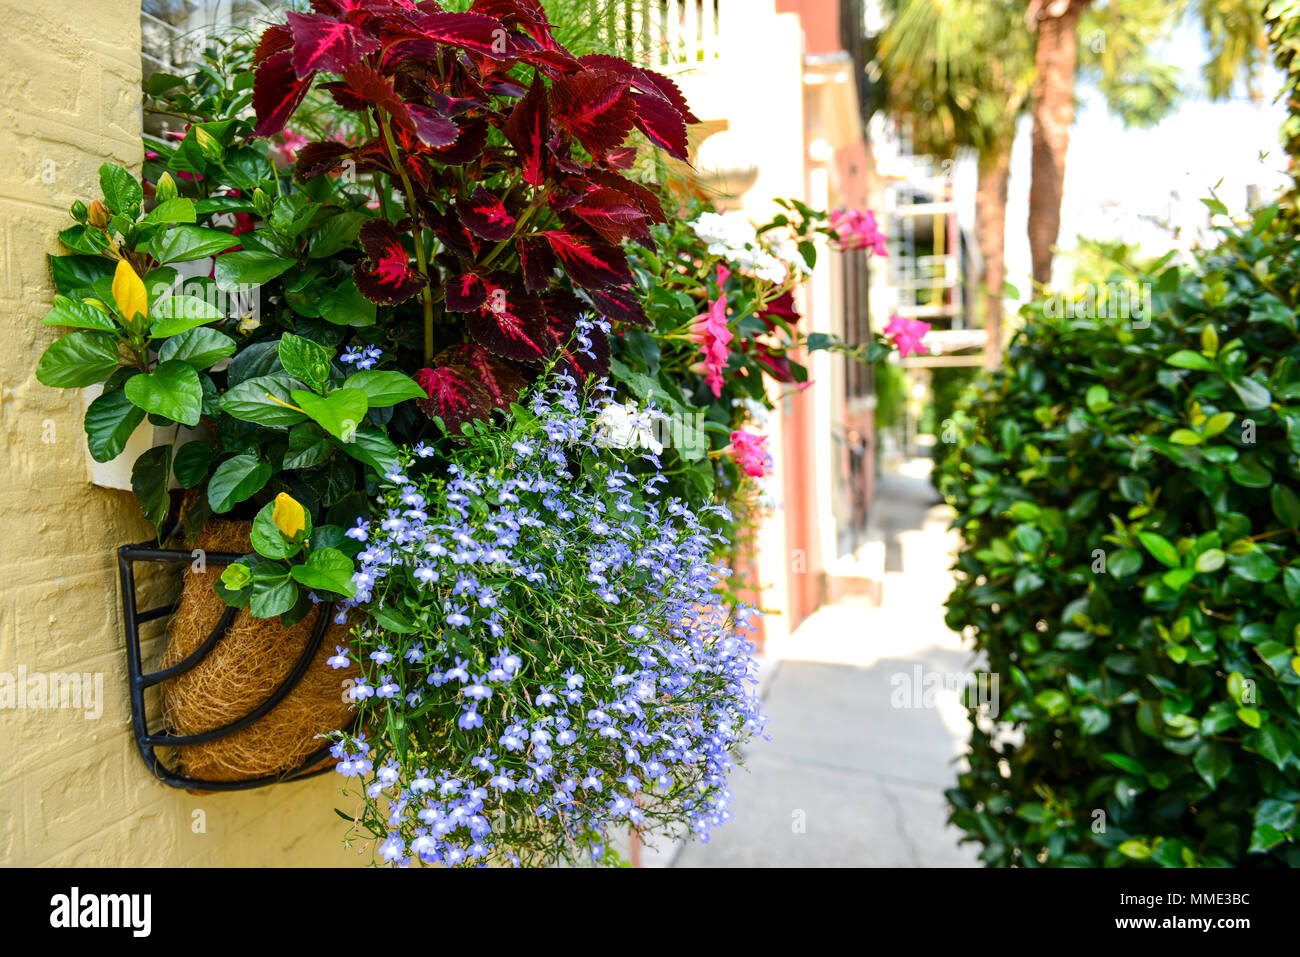 Rue de floraison - Fenêtre colorée fort flowers on a historic Charleston street dans le centre-ville de Charleston, Caroline du Sud, USA. Banque D'Images